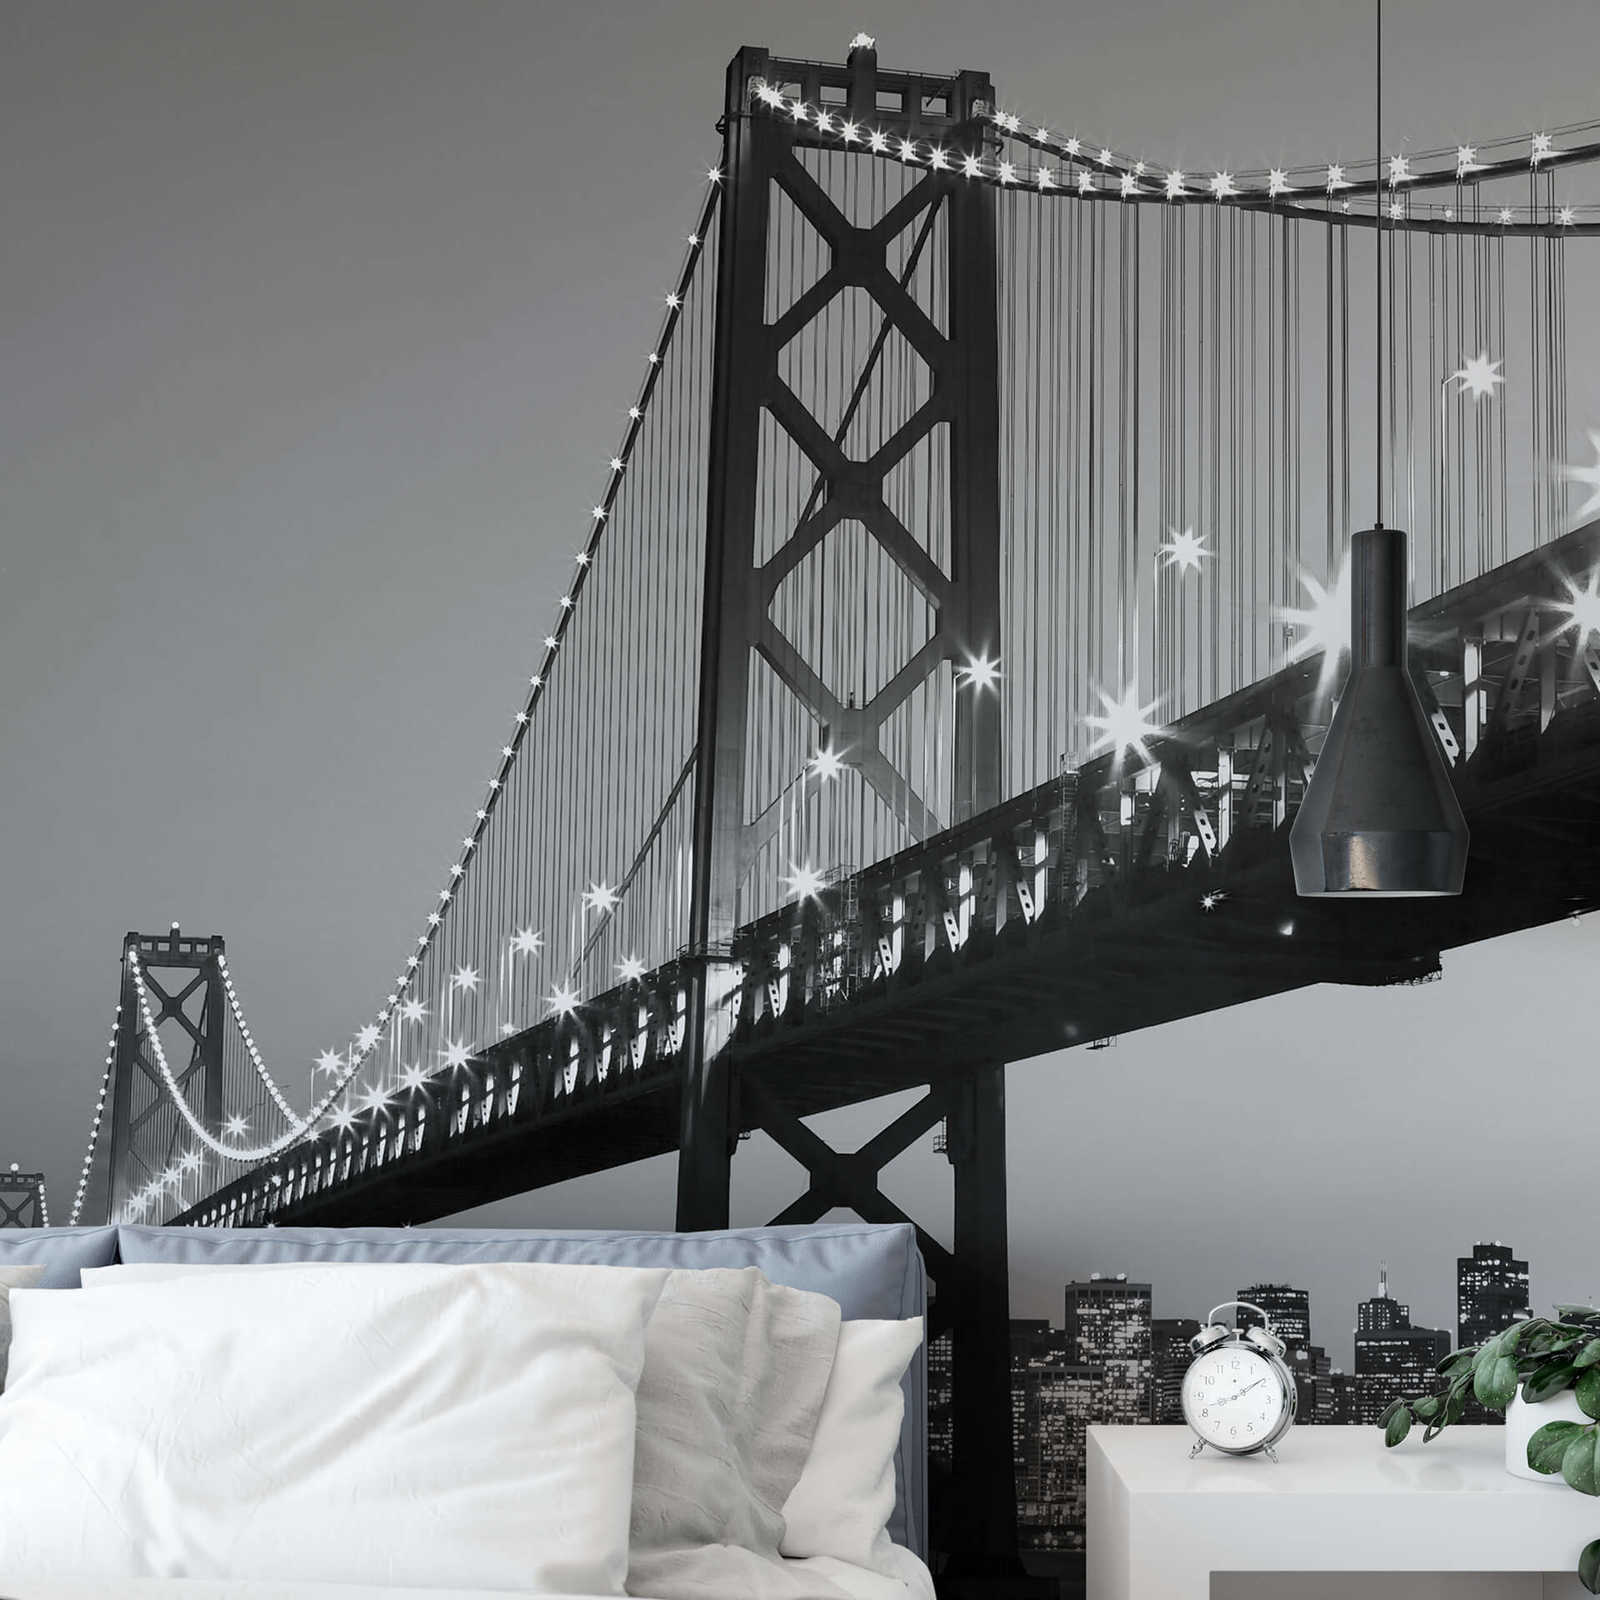             Papel pintado de San Francisco en blanco y negro, en formato vertical
        